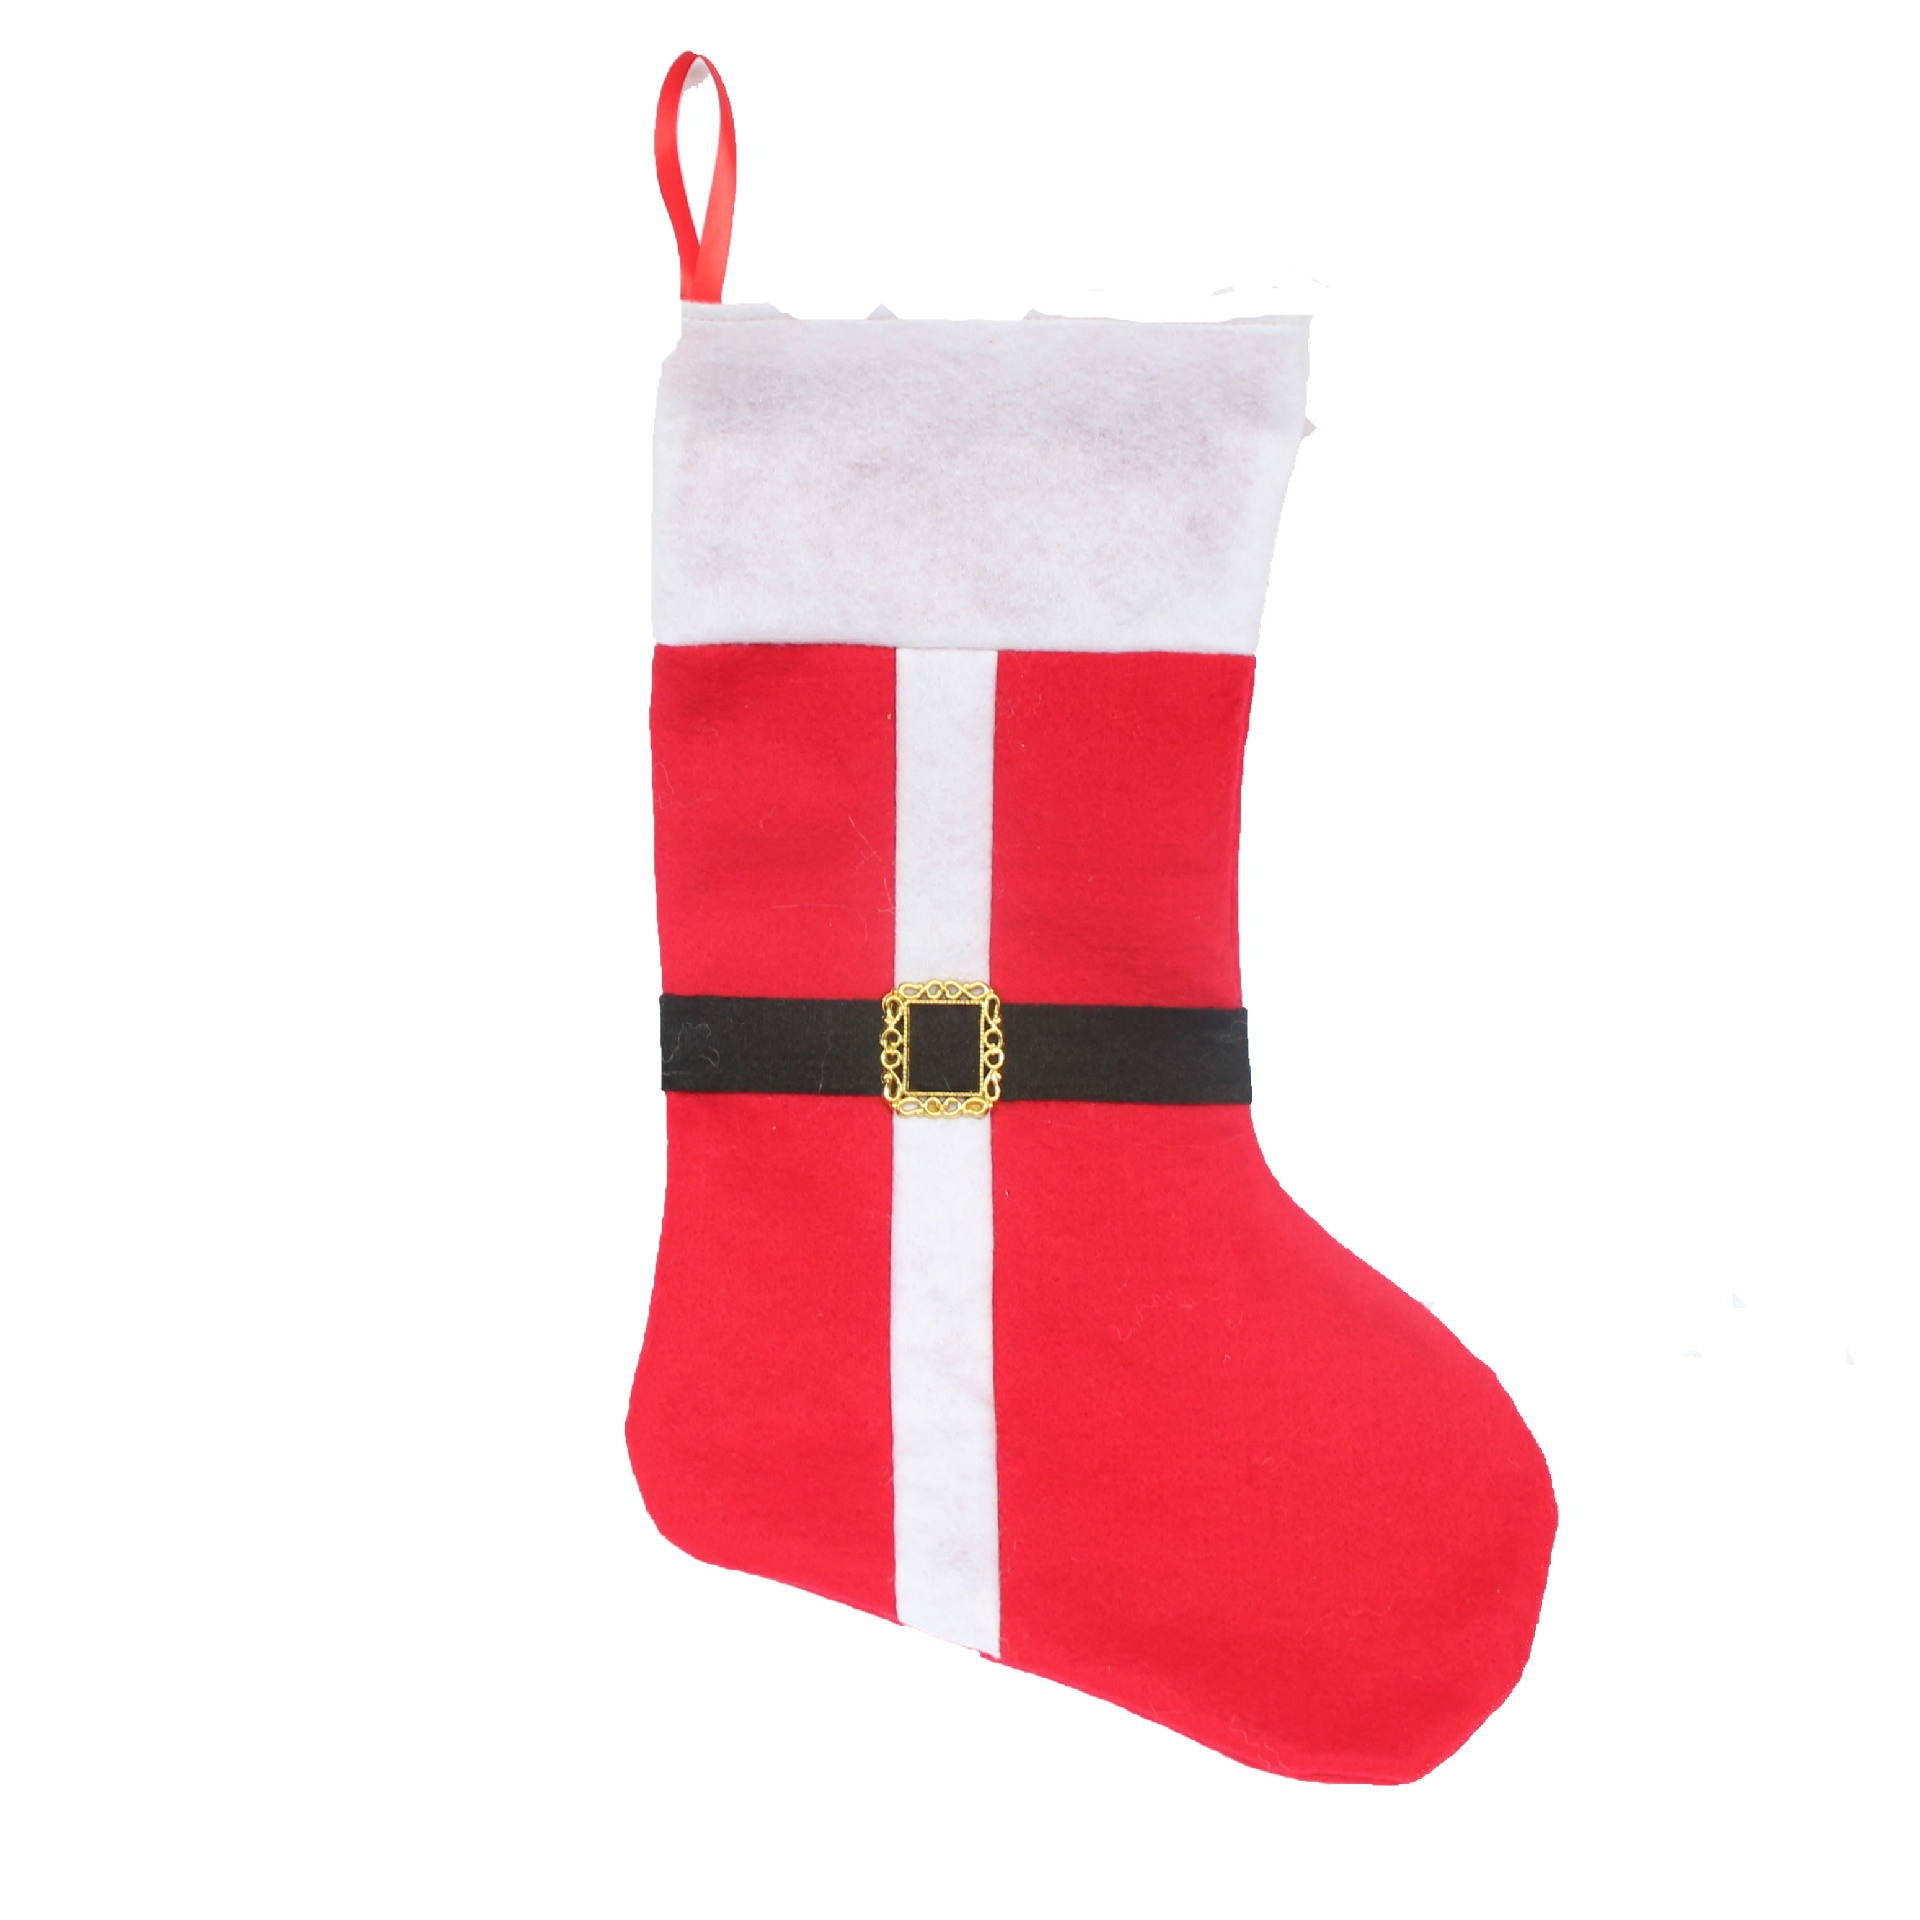 新款圣誕襪 圣誕裝飾品 圣誕無紡布大襪 圣誕禮品袋 圣誕禮品